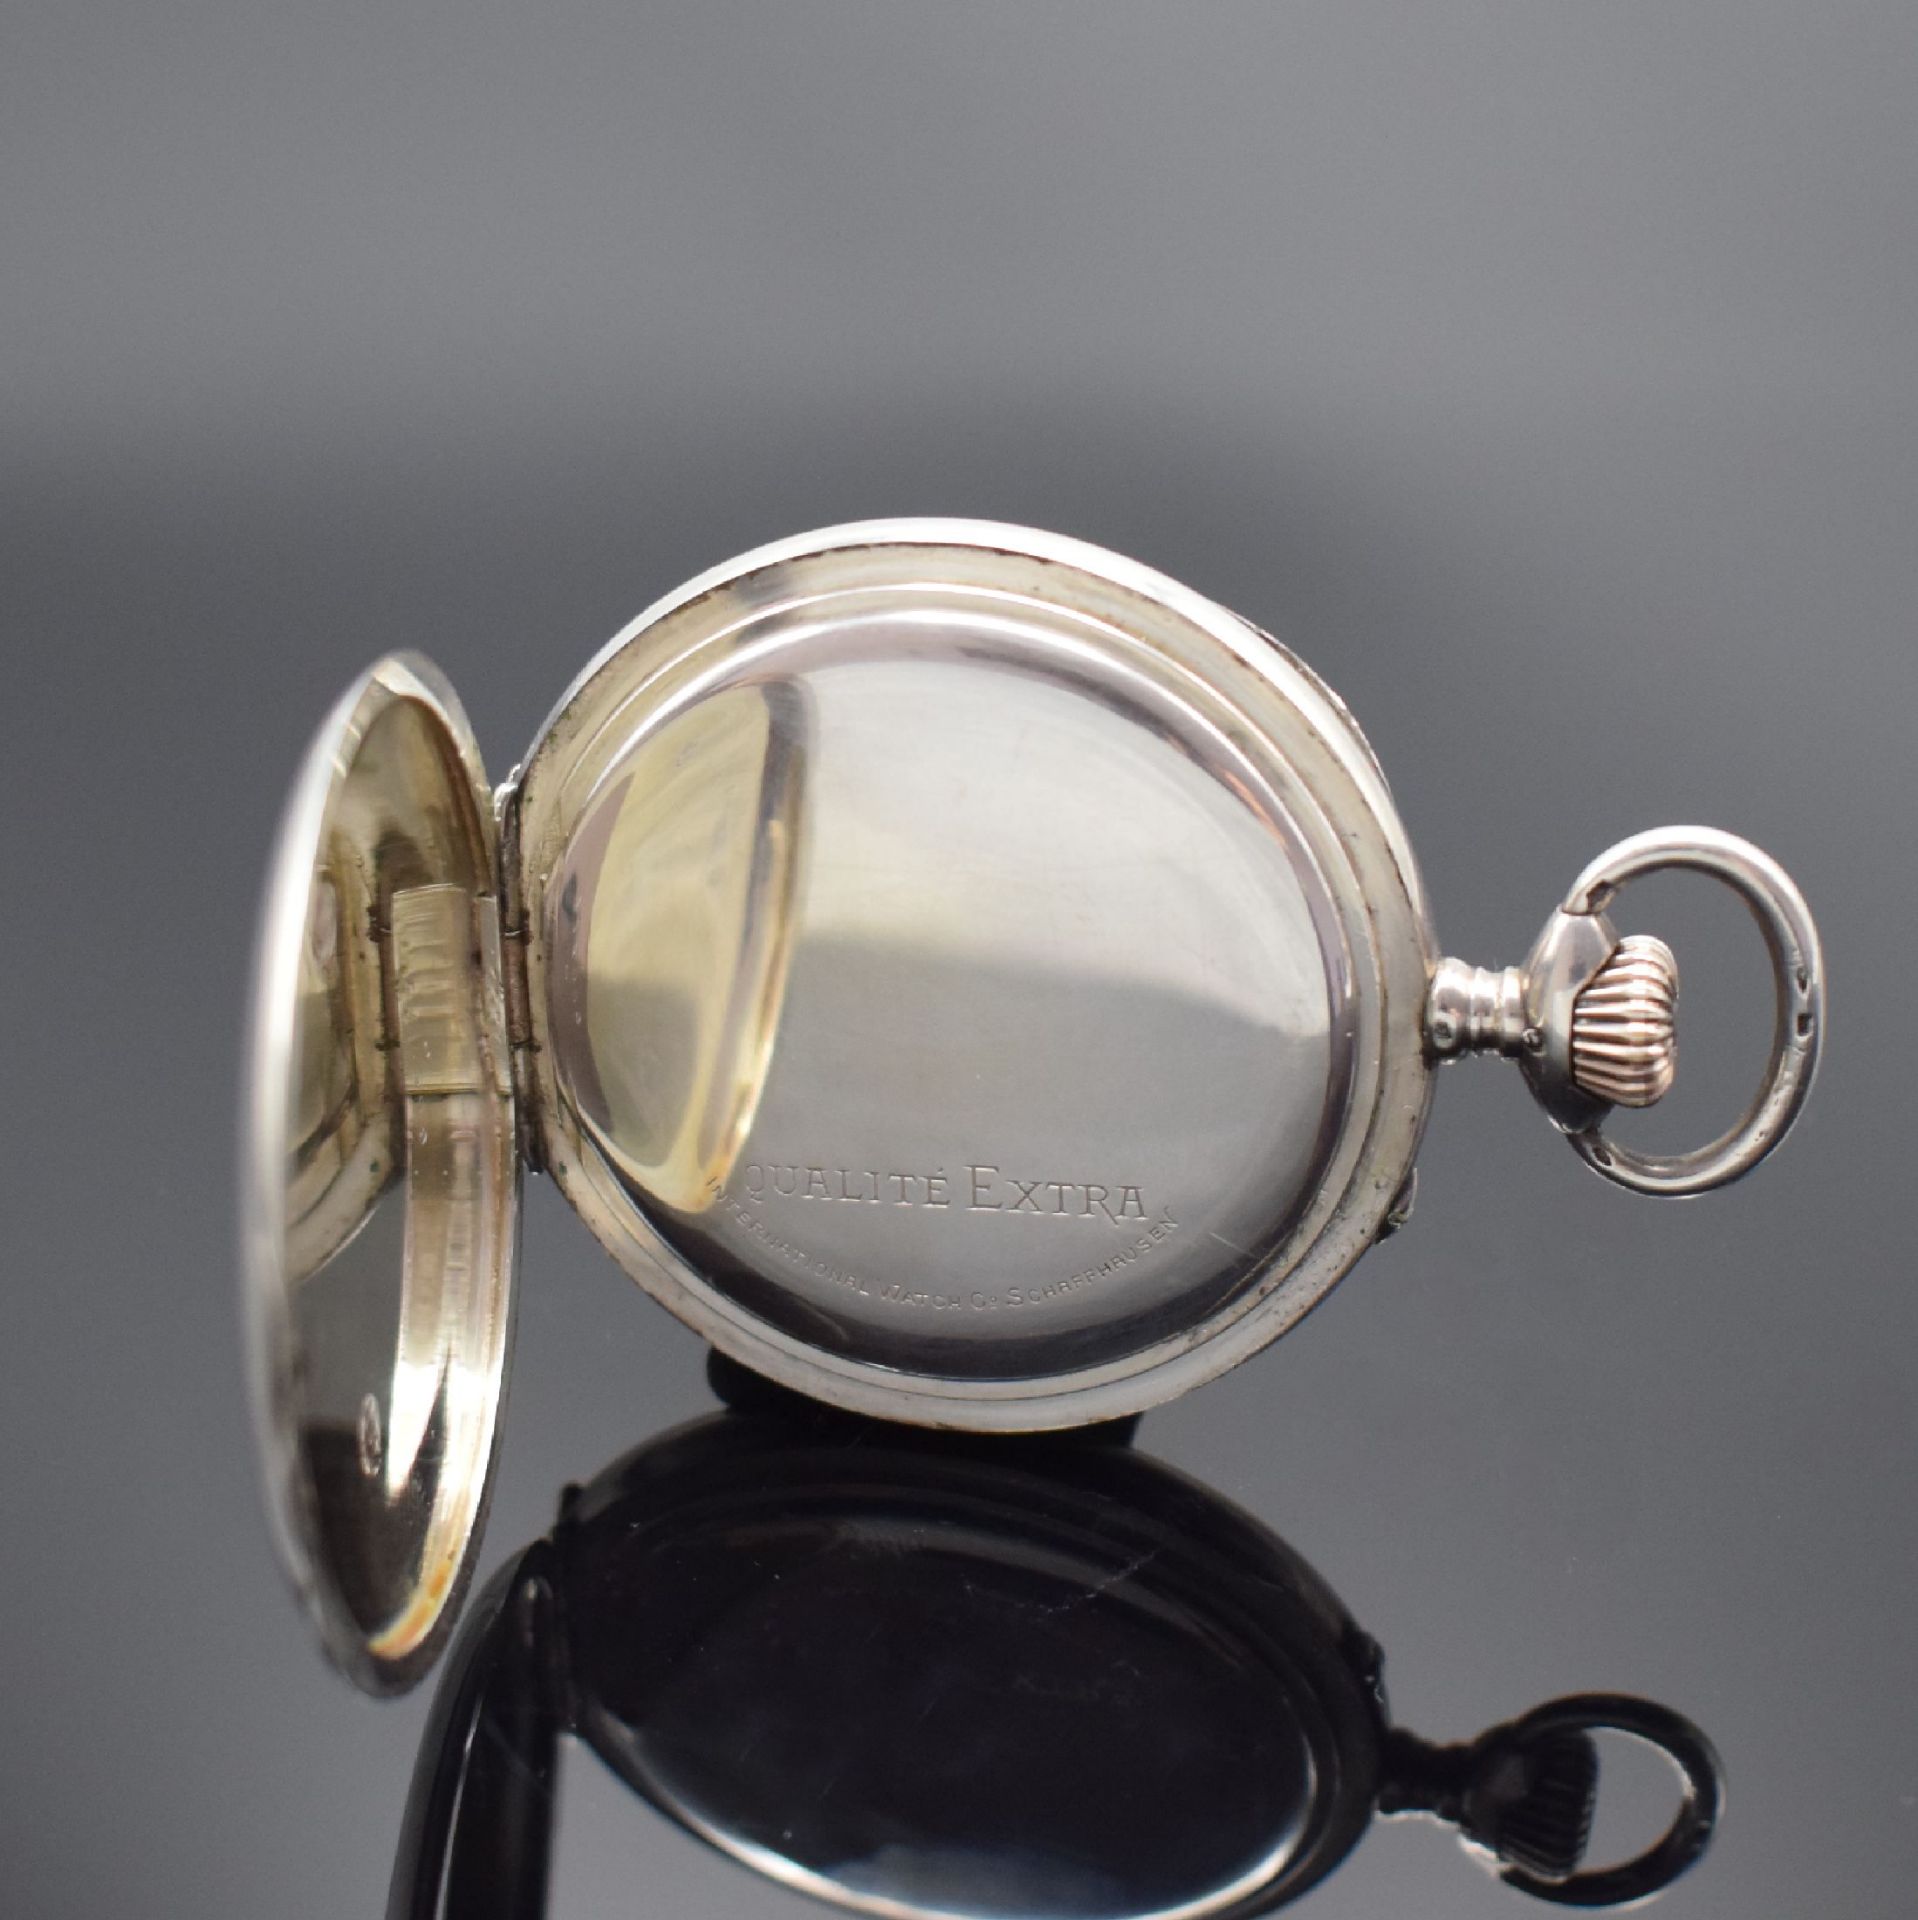 IWC 'Qualität Extra' seltene große Taschenuhr in Silber, - Image 4 of 6